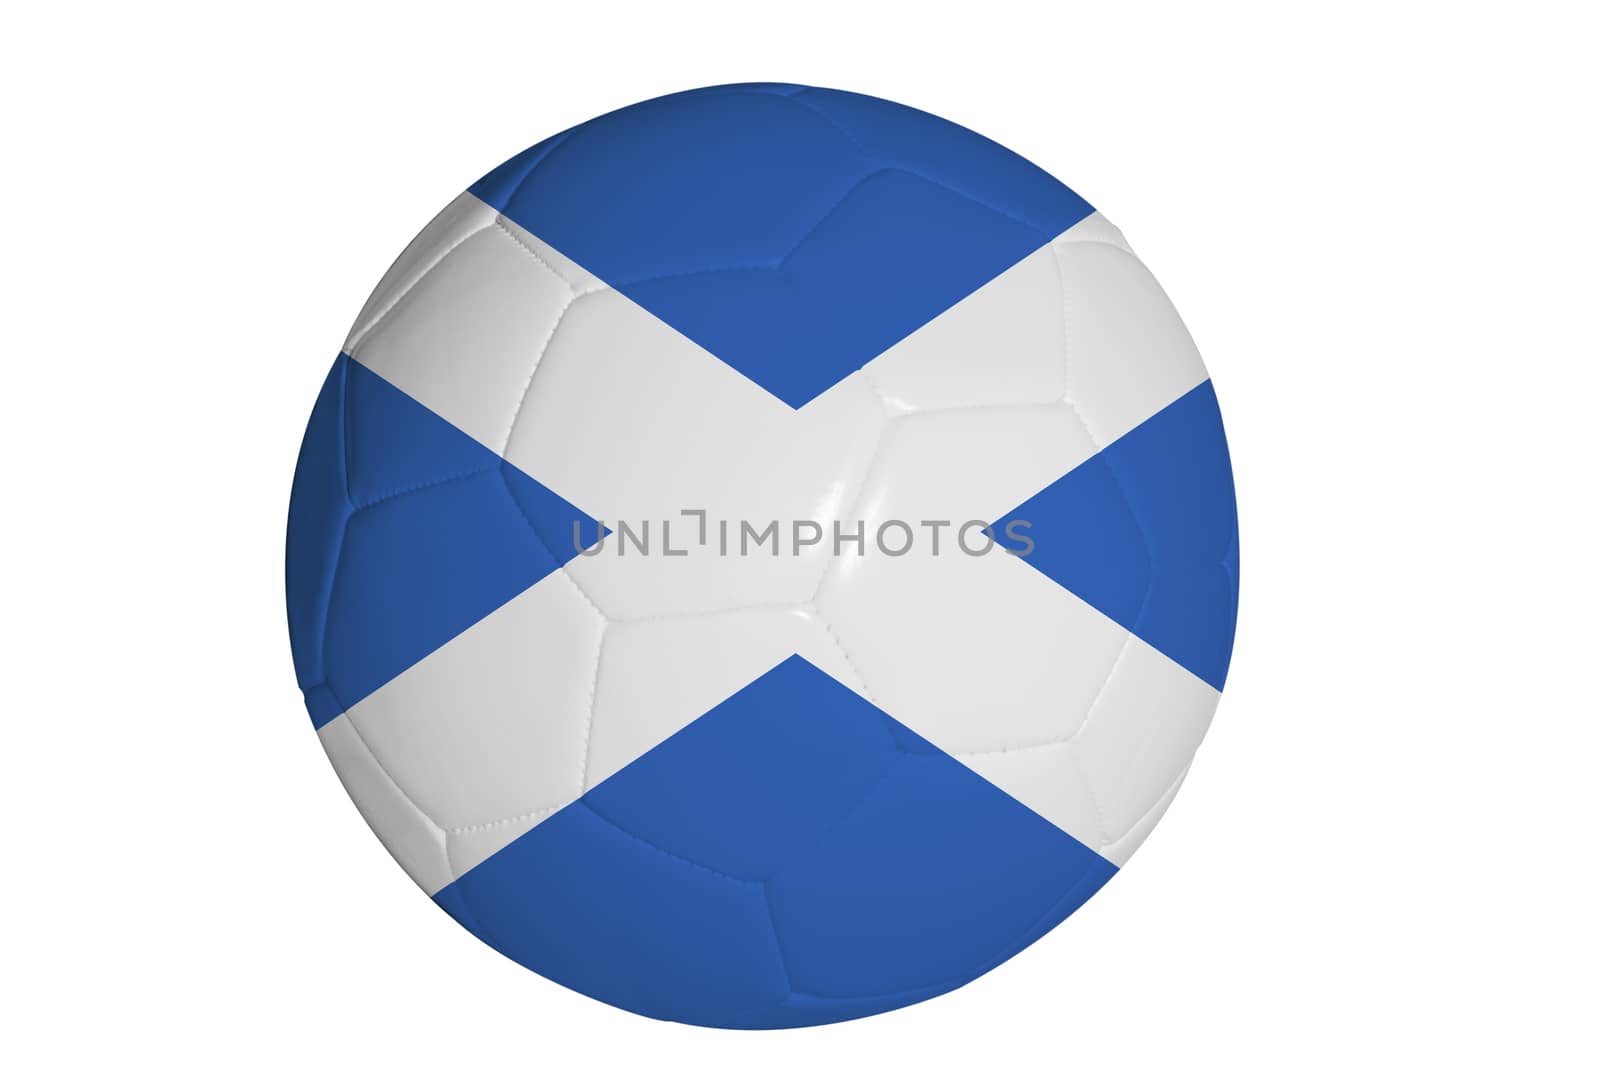 Scottish flag graphic on soccer ball